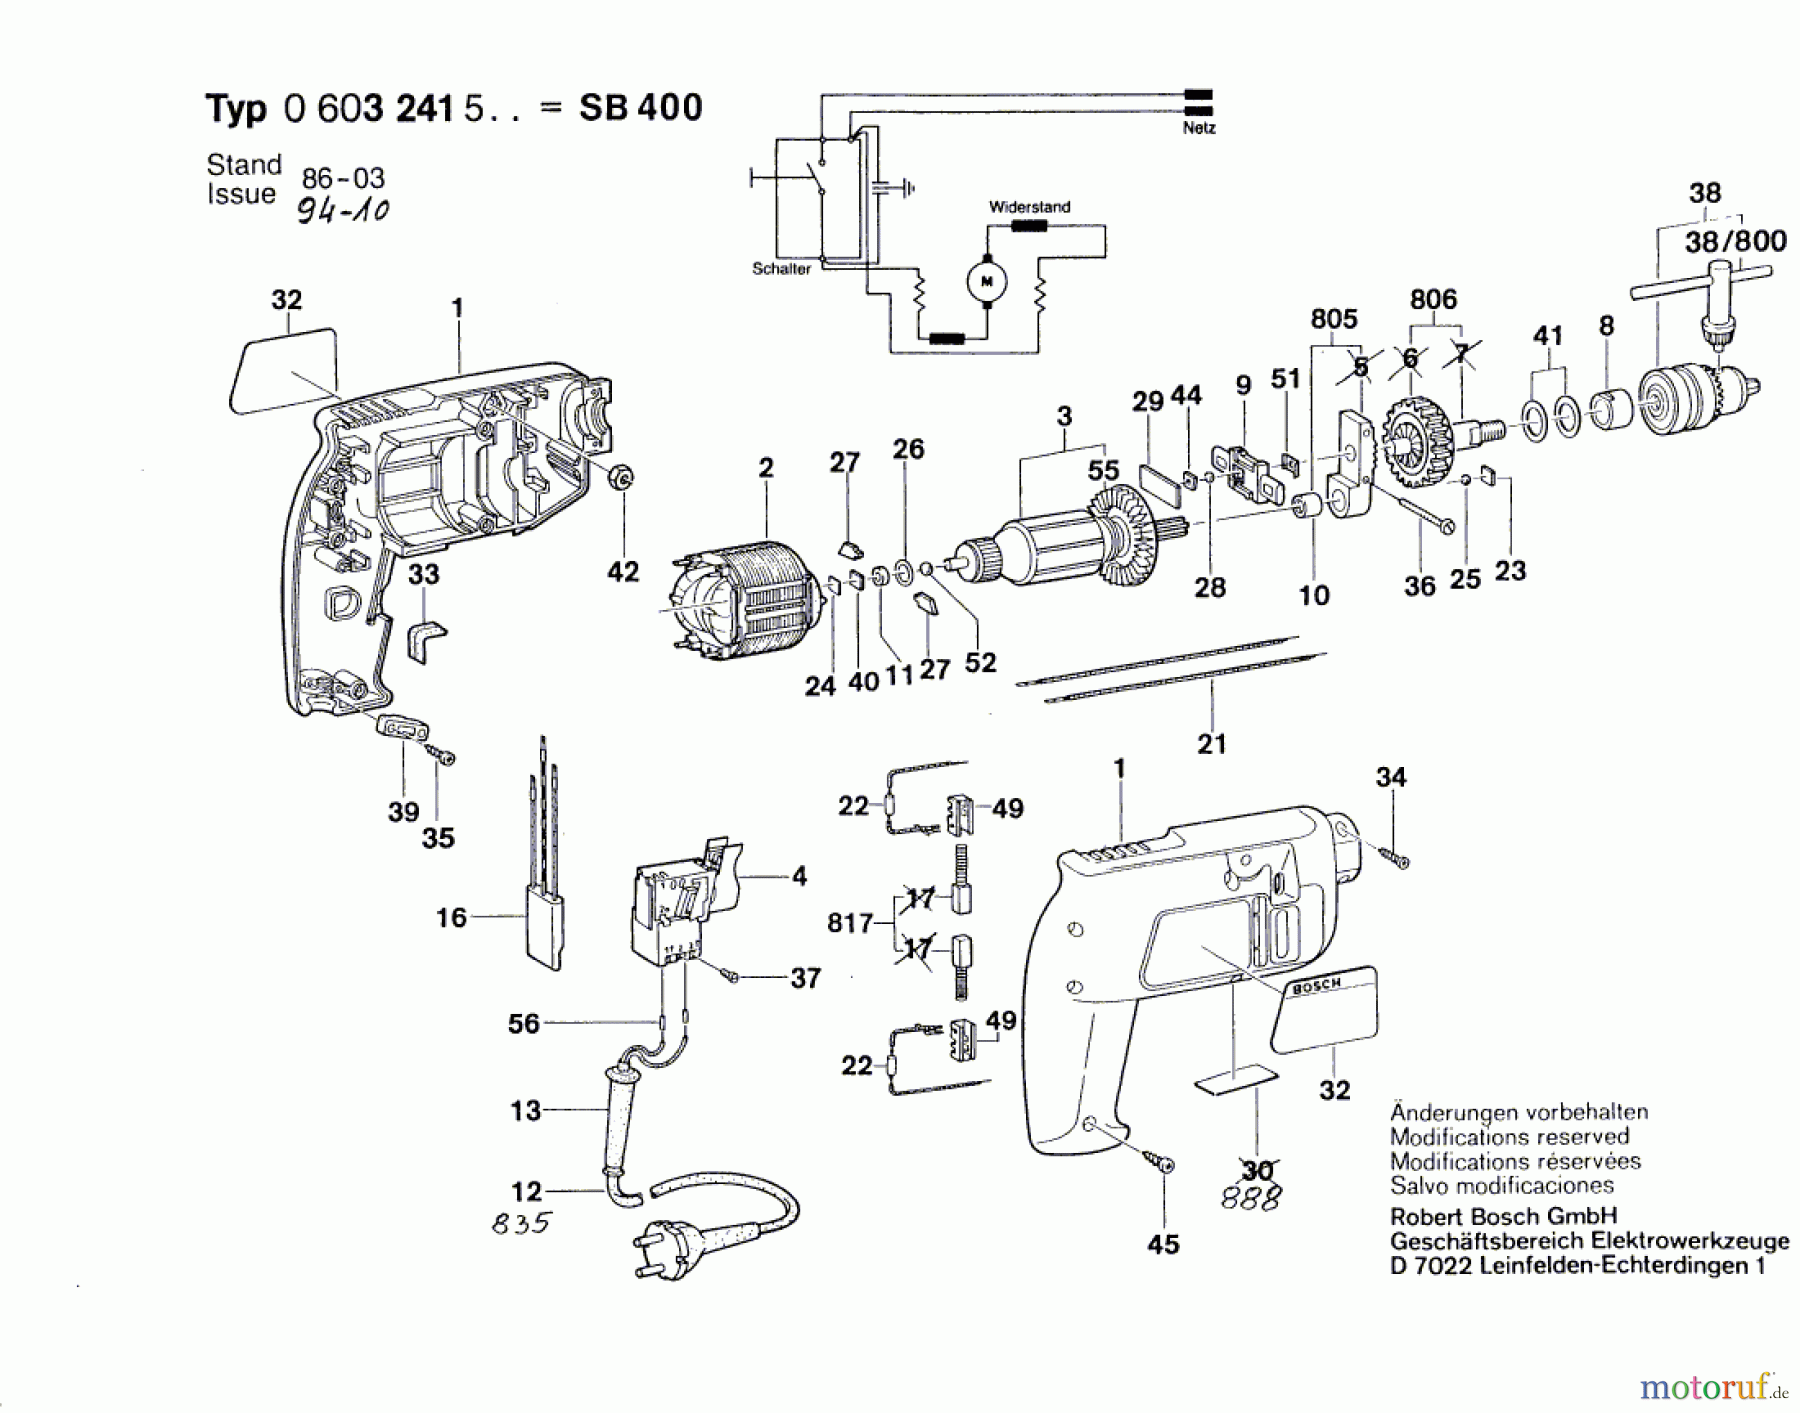  Bosch Werkzeug Schlagbohrmaschine SB 400 Seite 1